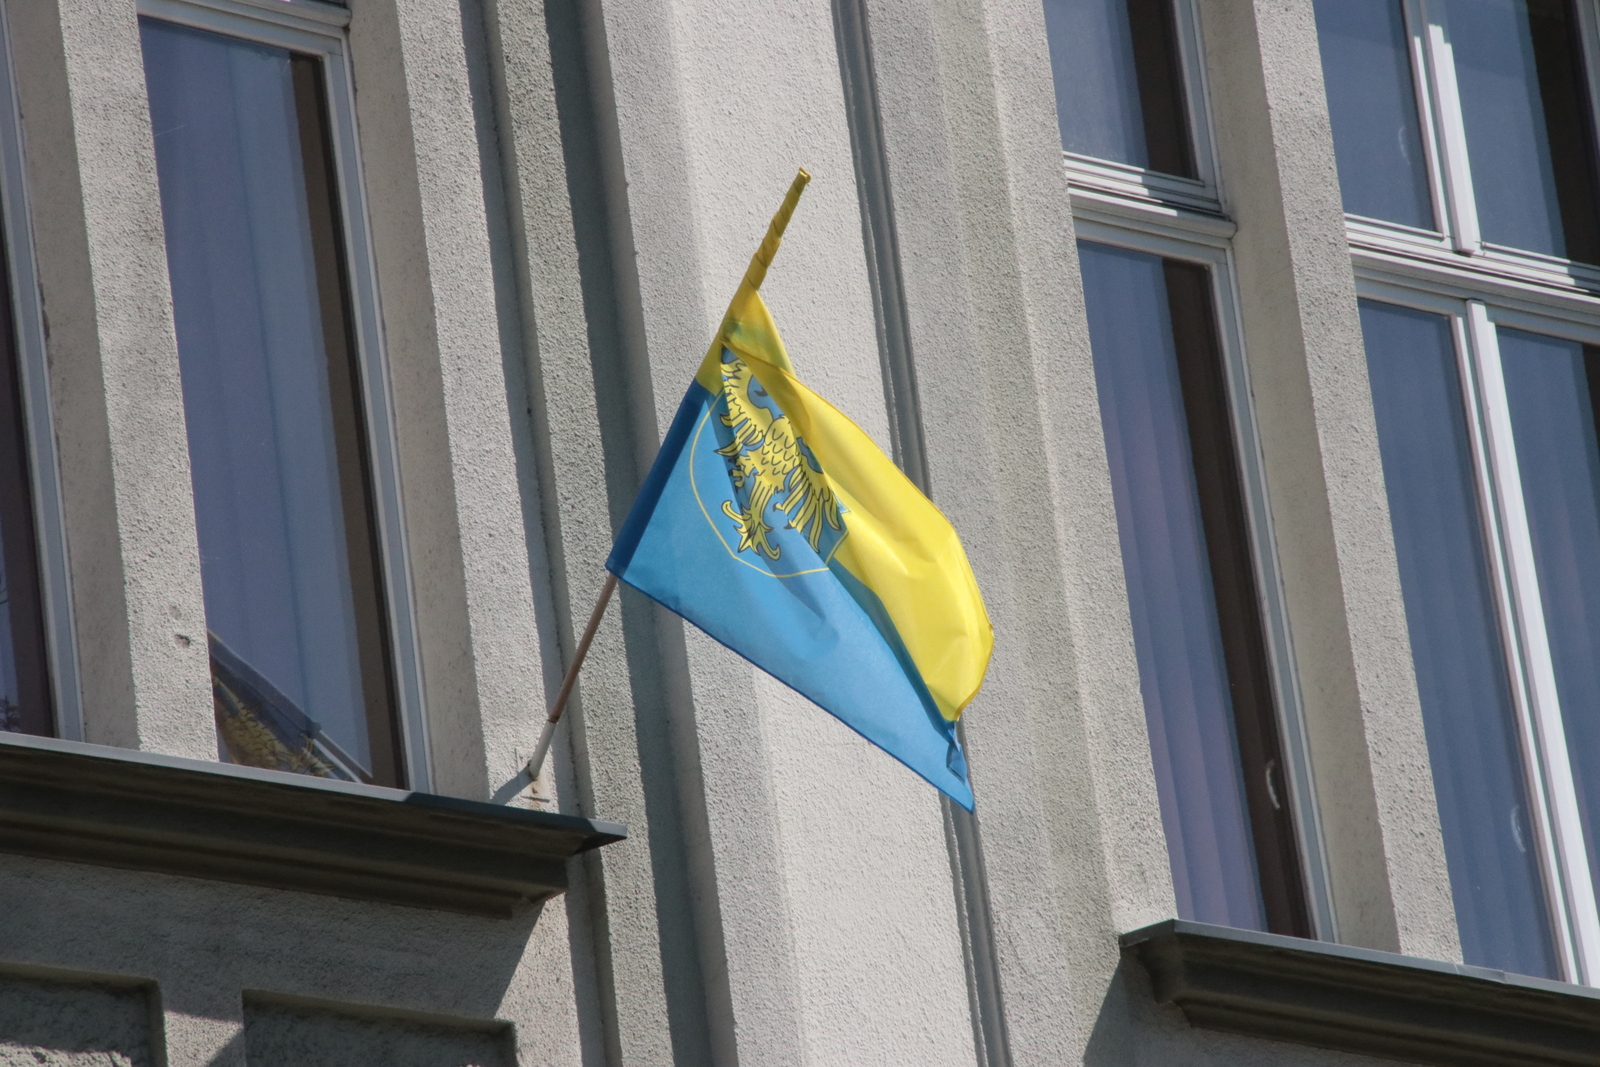 Podobnie postąpiło również Miasto Racibórz, które, przypomnijmy, w 2019 roku wywieszenia flagi odmówiło po tym, jak poprosił o to Ruch Autonomii Śląska